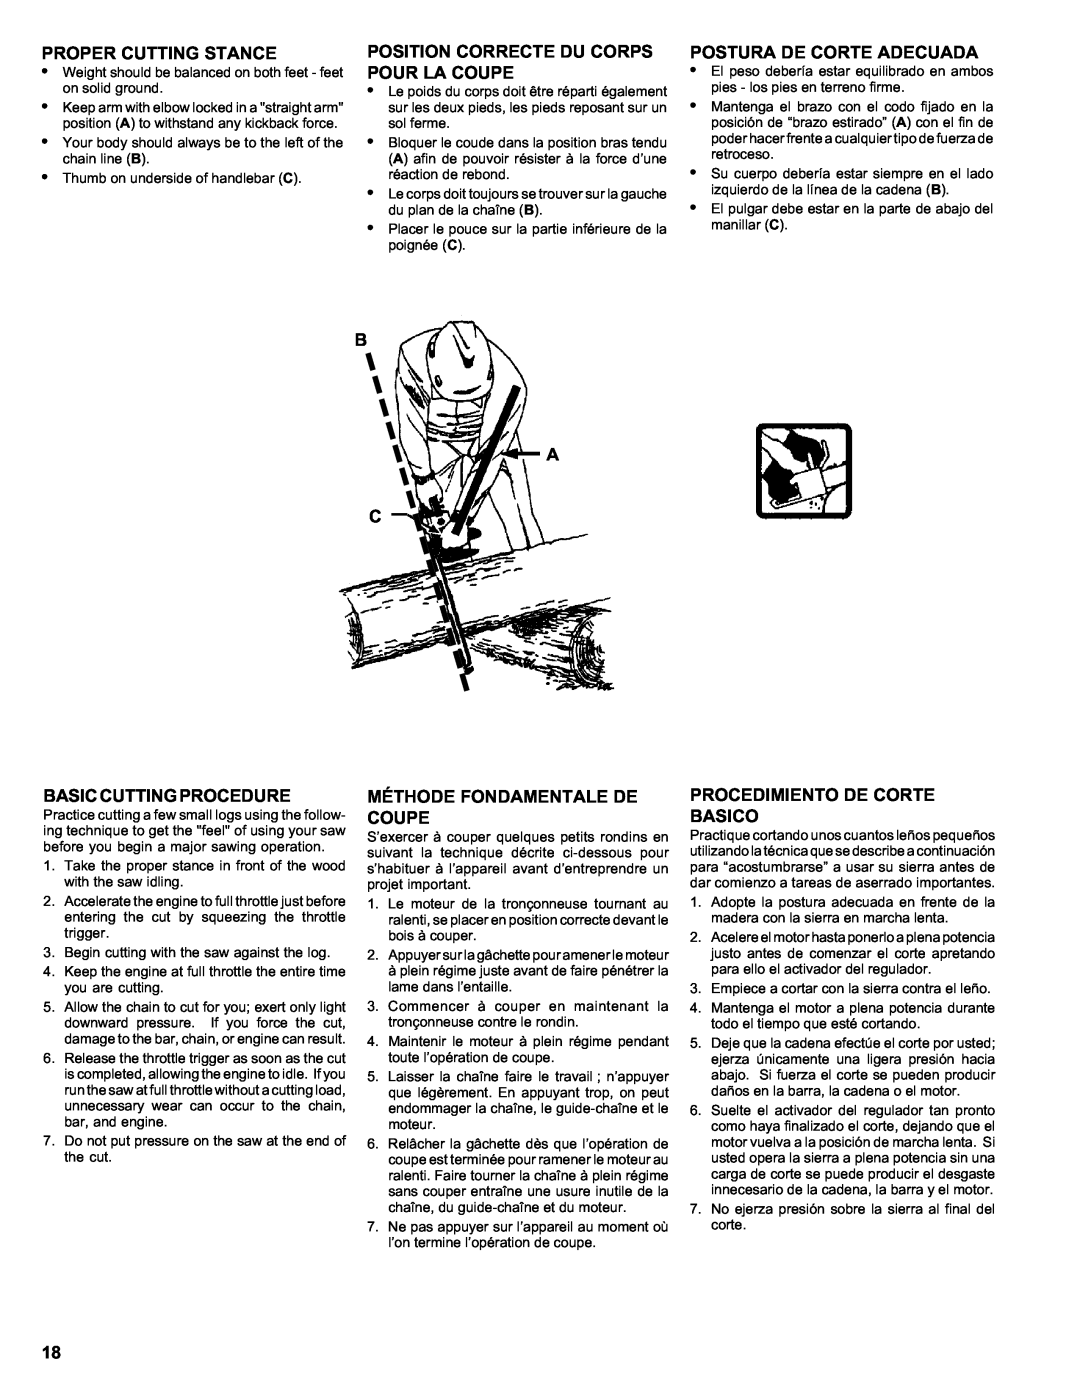 Homelite ut 10910 manual Proper Cutting Stance, Position Correcte Du Corps Pour La Coupe, B A C, Postura De Corte Adecuada 